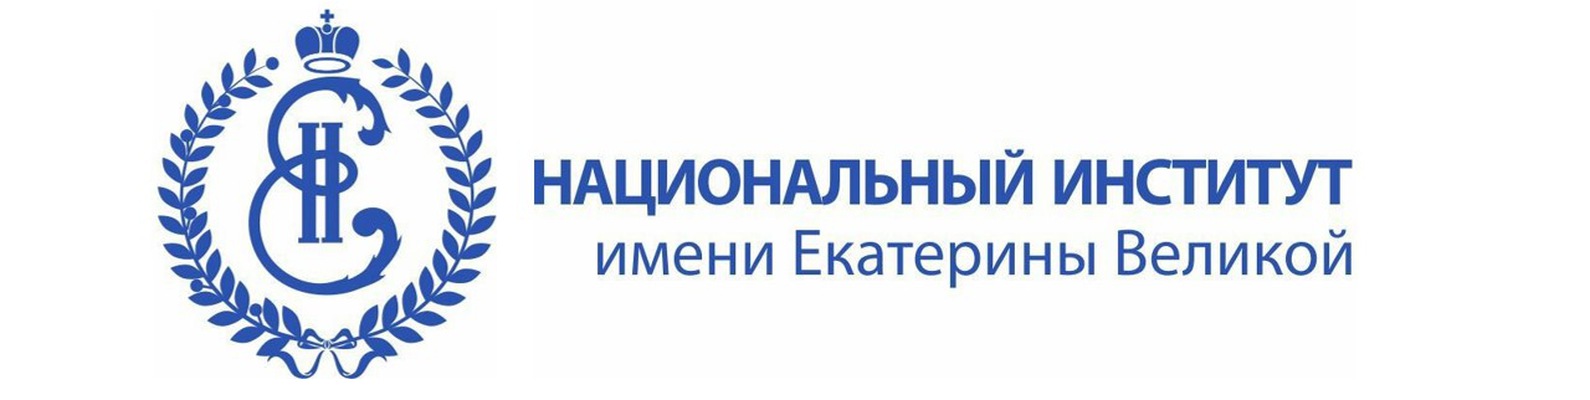 Логотип (Национальный институт имени Екатерины Великой)